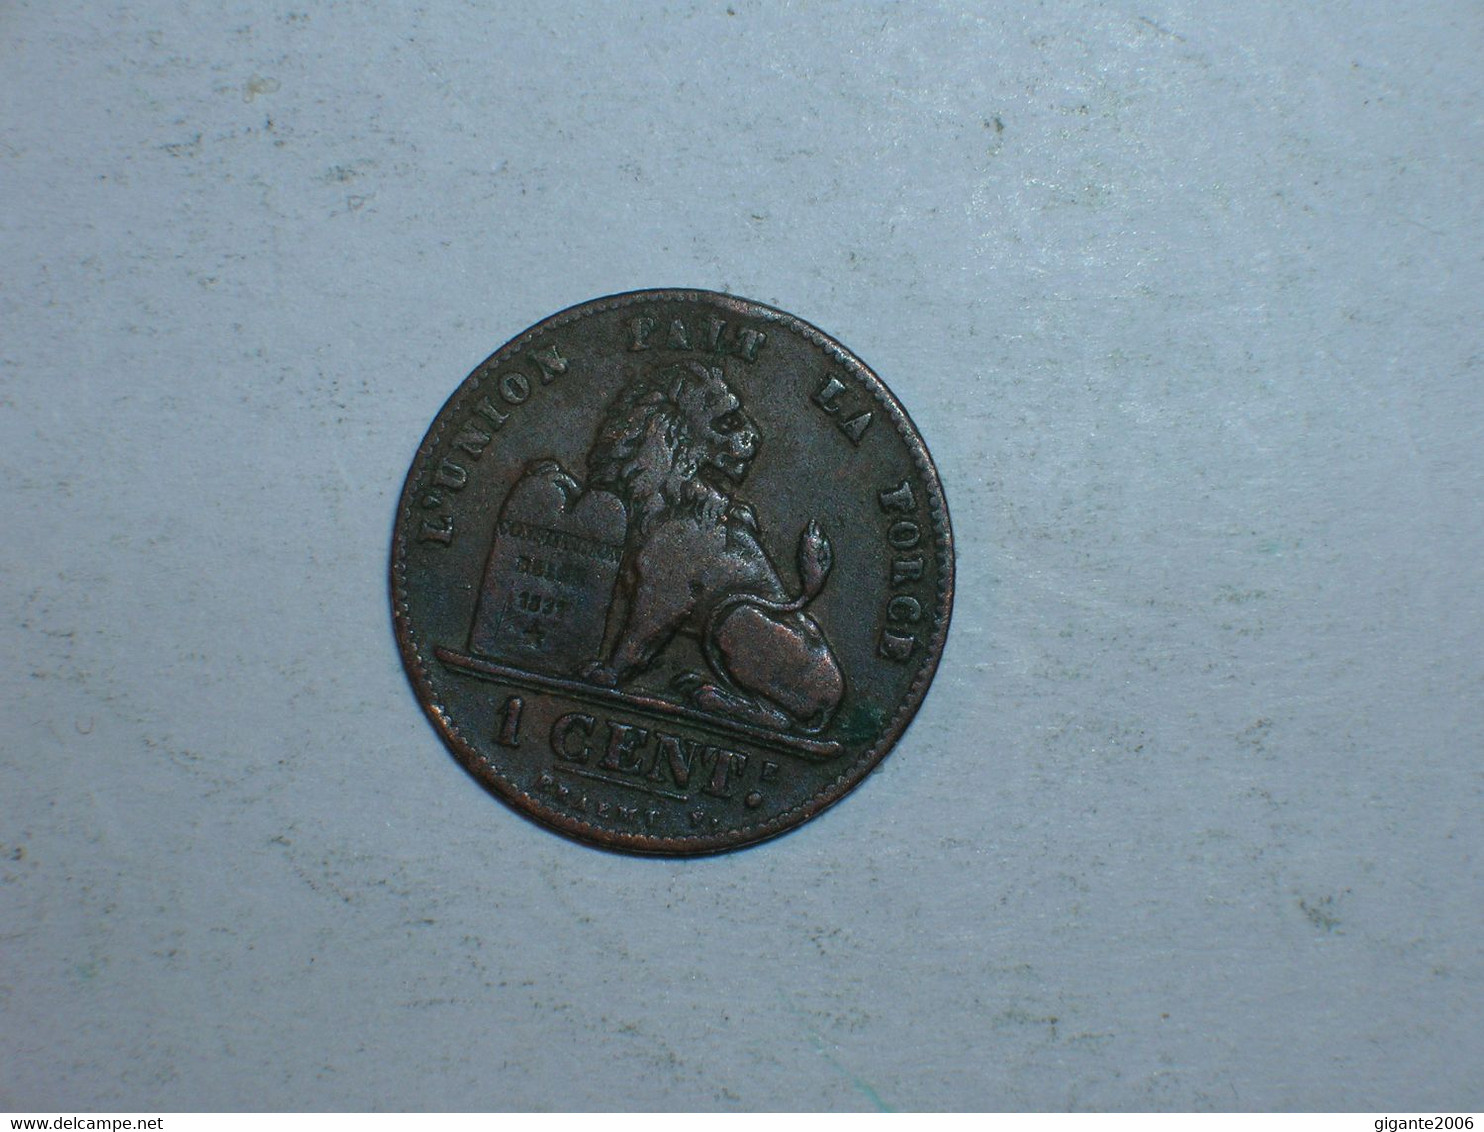 BELGICA 1 CENTIMO 1907 FR (9242) - 1 Cent